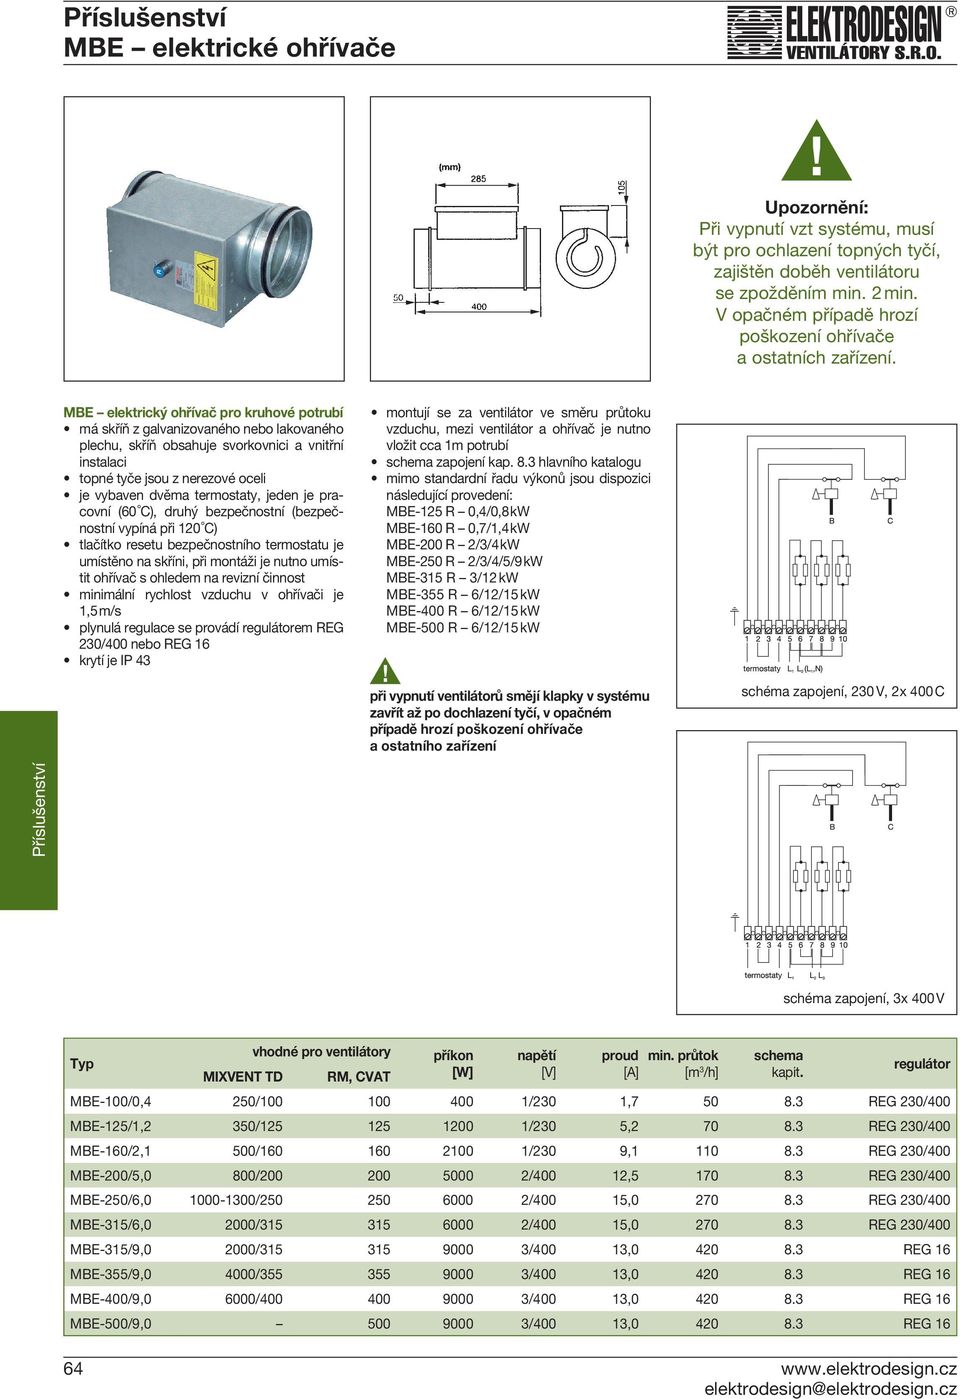 MBE elektrický ohřívač pro kruhové potrubí instalaci topné tyče jsou z nerezové oceli je vybaven dvěma termostaty, jeden je pracovní (60 C), druhý bezpečnostní (bezpečnostní vypíná při 120 C)